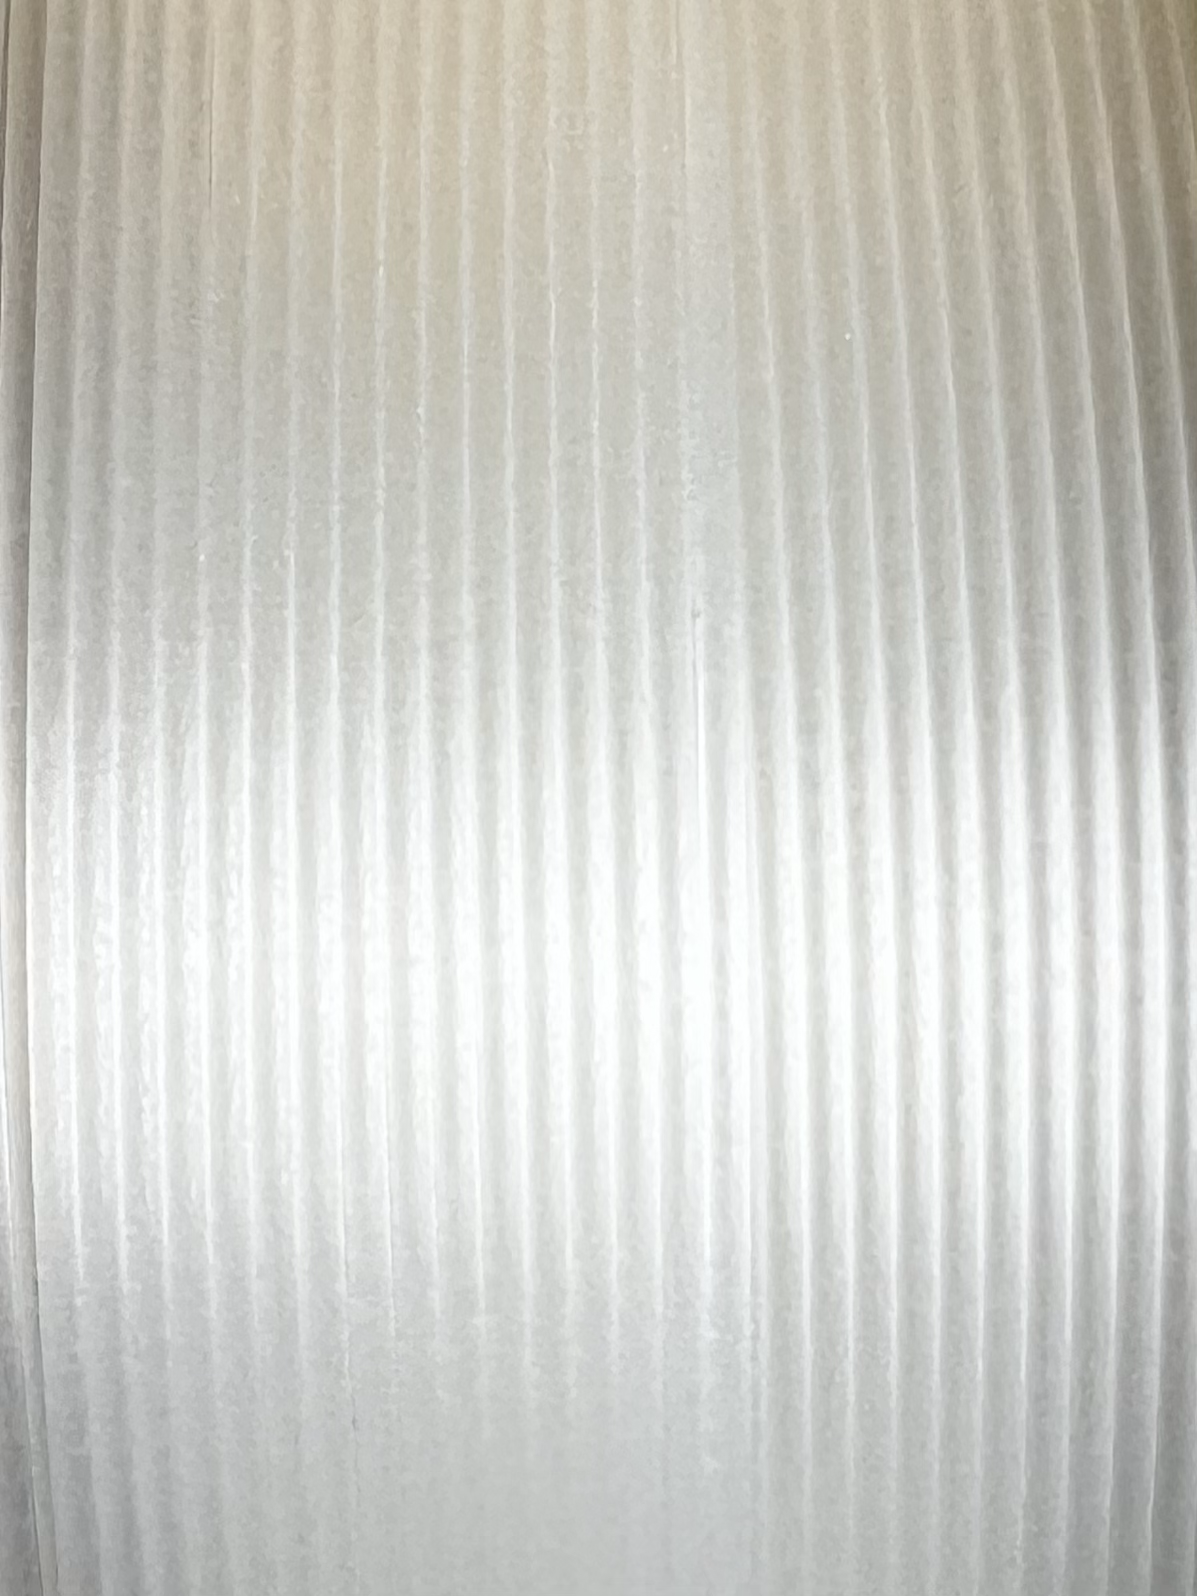 PLA filament ABAFLEX natural, 1.75 ± 0.019 mm, 1000g, REFILL 70mm